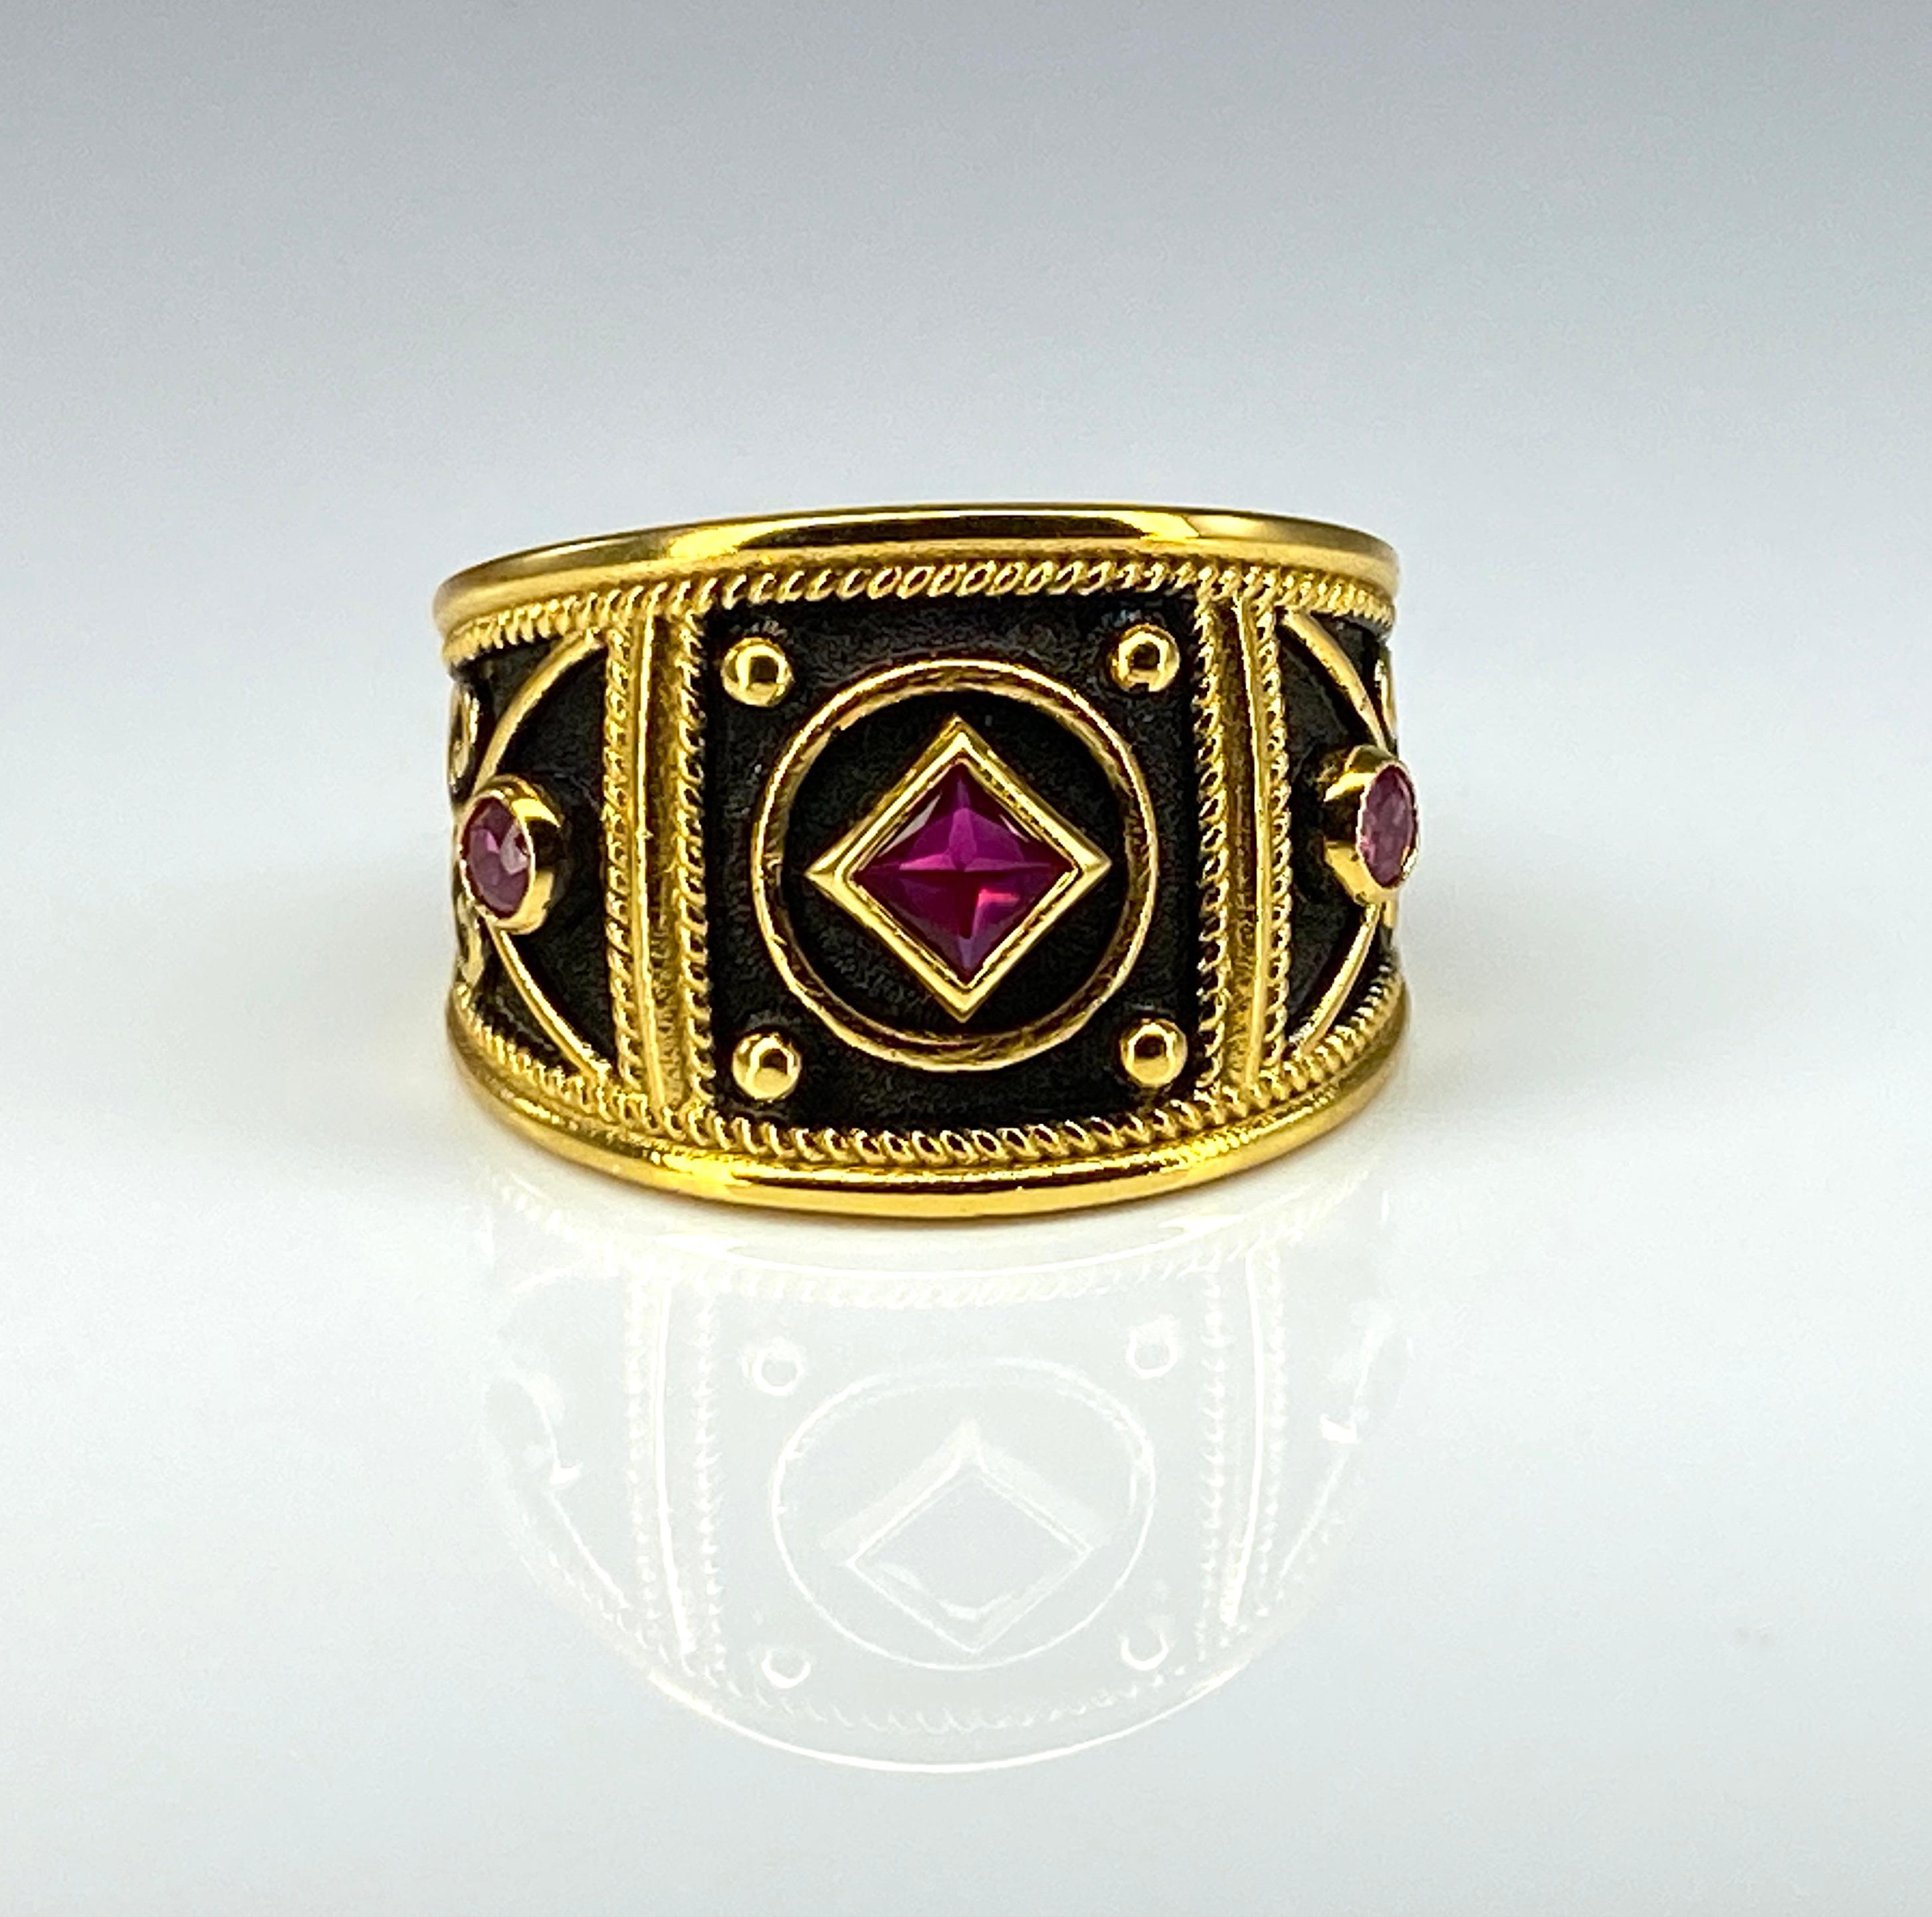 Präsentiert S.Georgios Designer 18 Karat massivem Gelbgold Ring handgefertigt in einem byzantinischen Stil Verarbeitung mit einem einzigartigen Samt Hintergrund fertig mit schwarzem Rhodium. Dieser abgestufte Ring mit großer Auslage ist mit einem